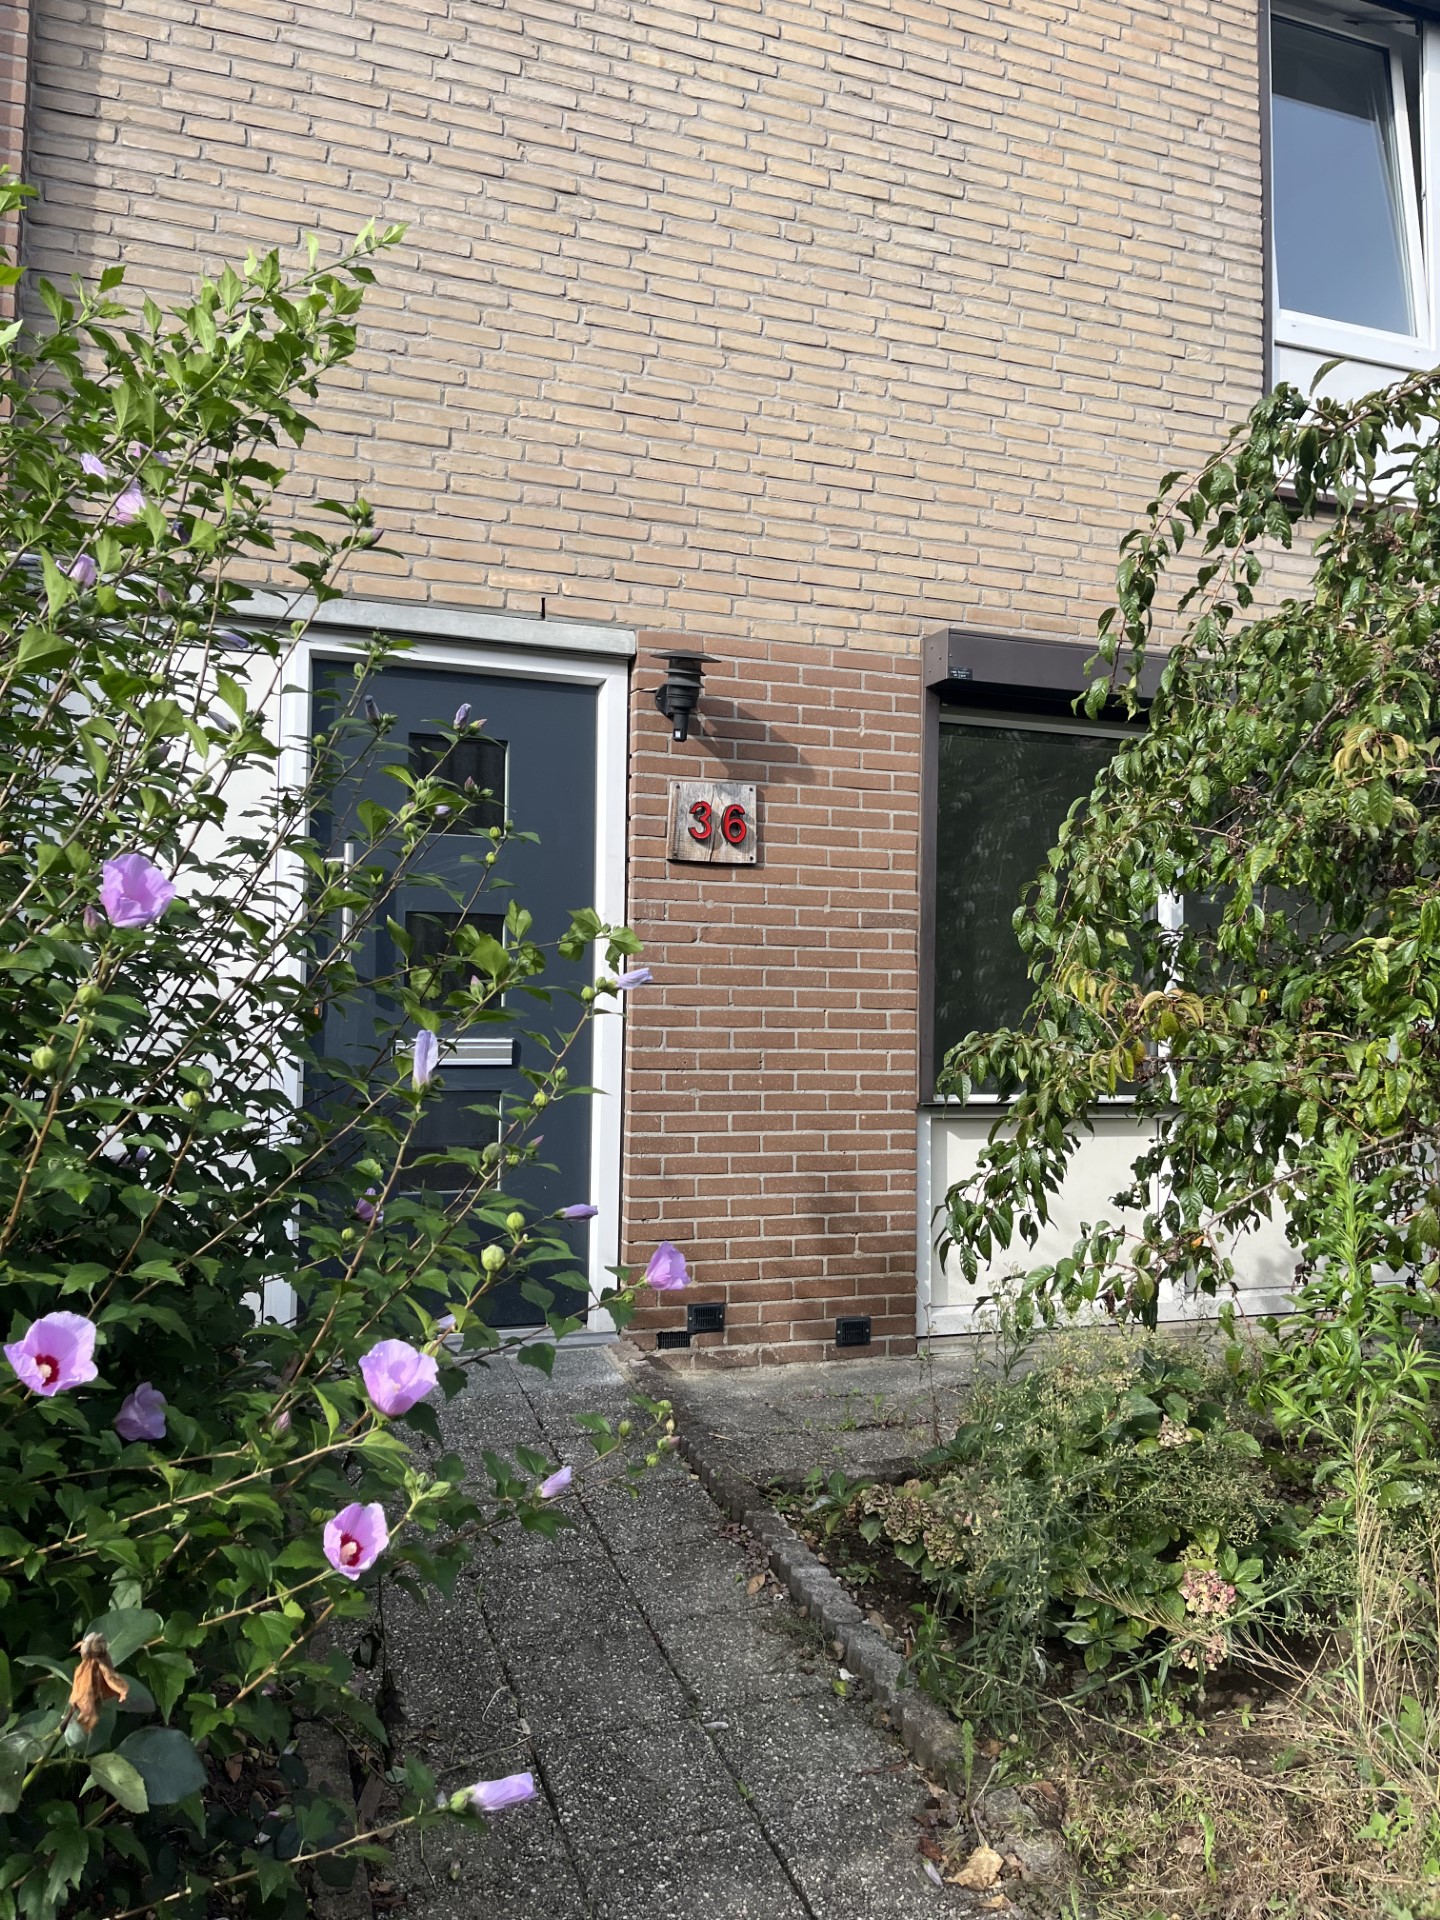 Babylonstraat 36, 6418 TN Heerlen, Nederland